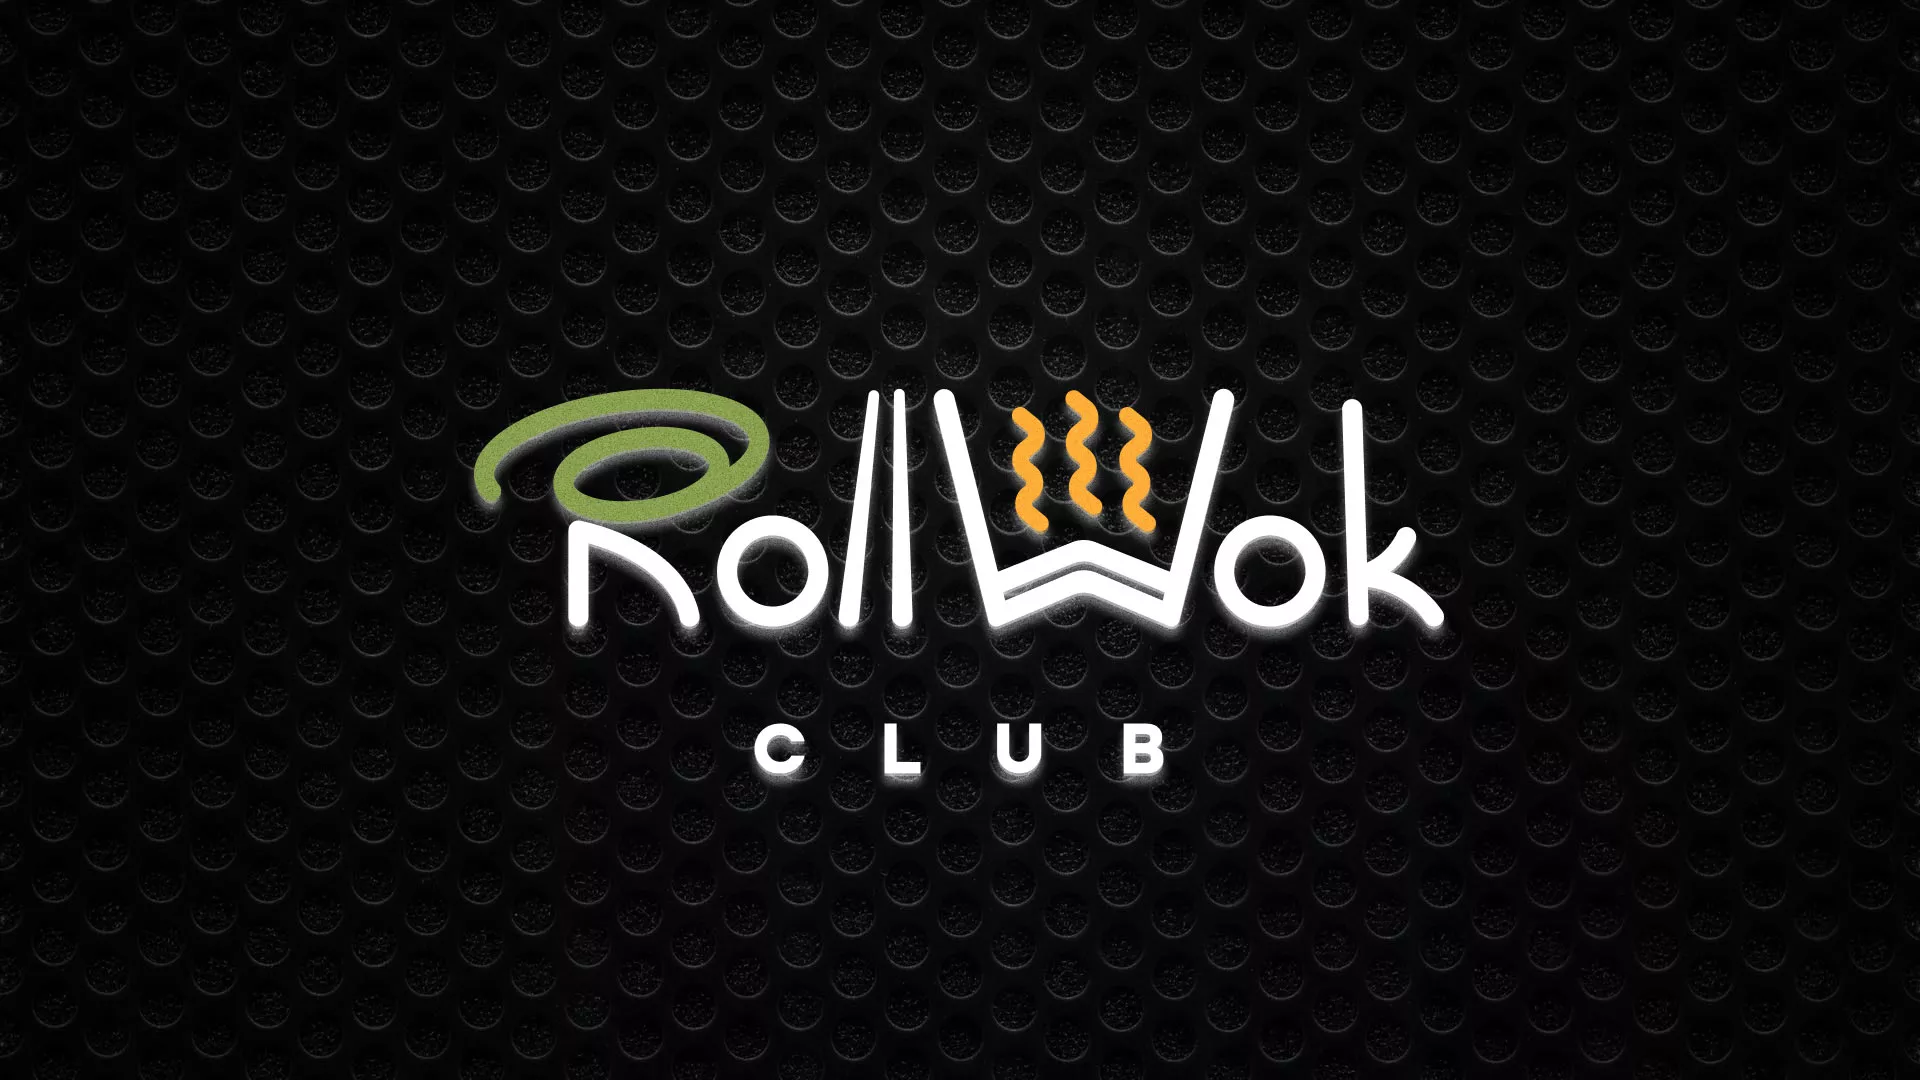 Брендирование торговых точек суши-бара «Roll Wok Club» в Волжске